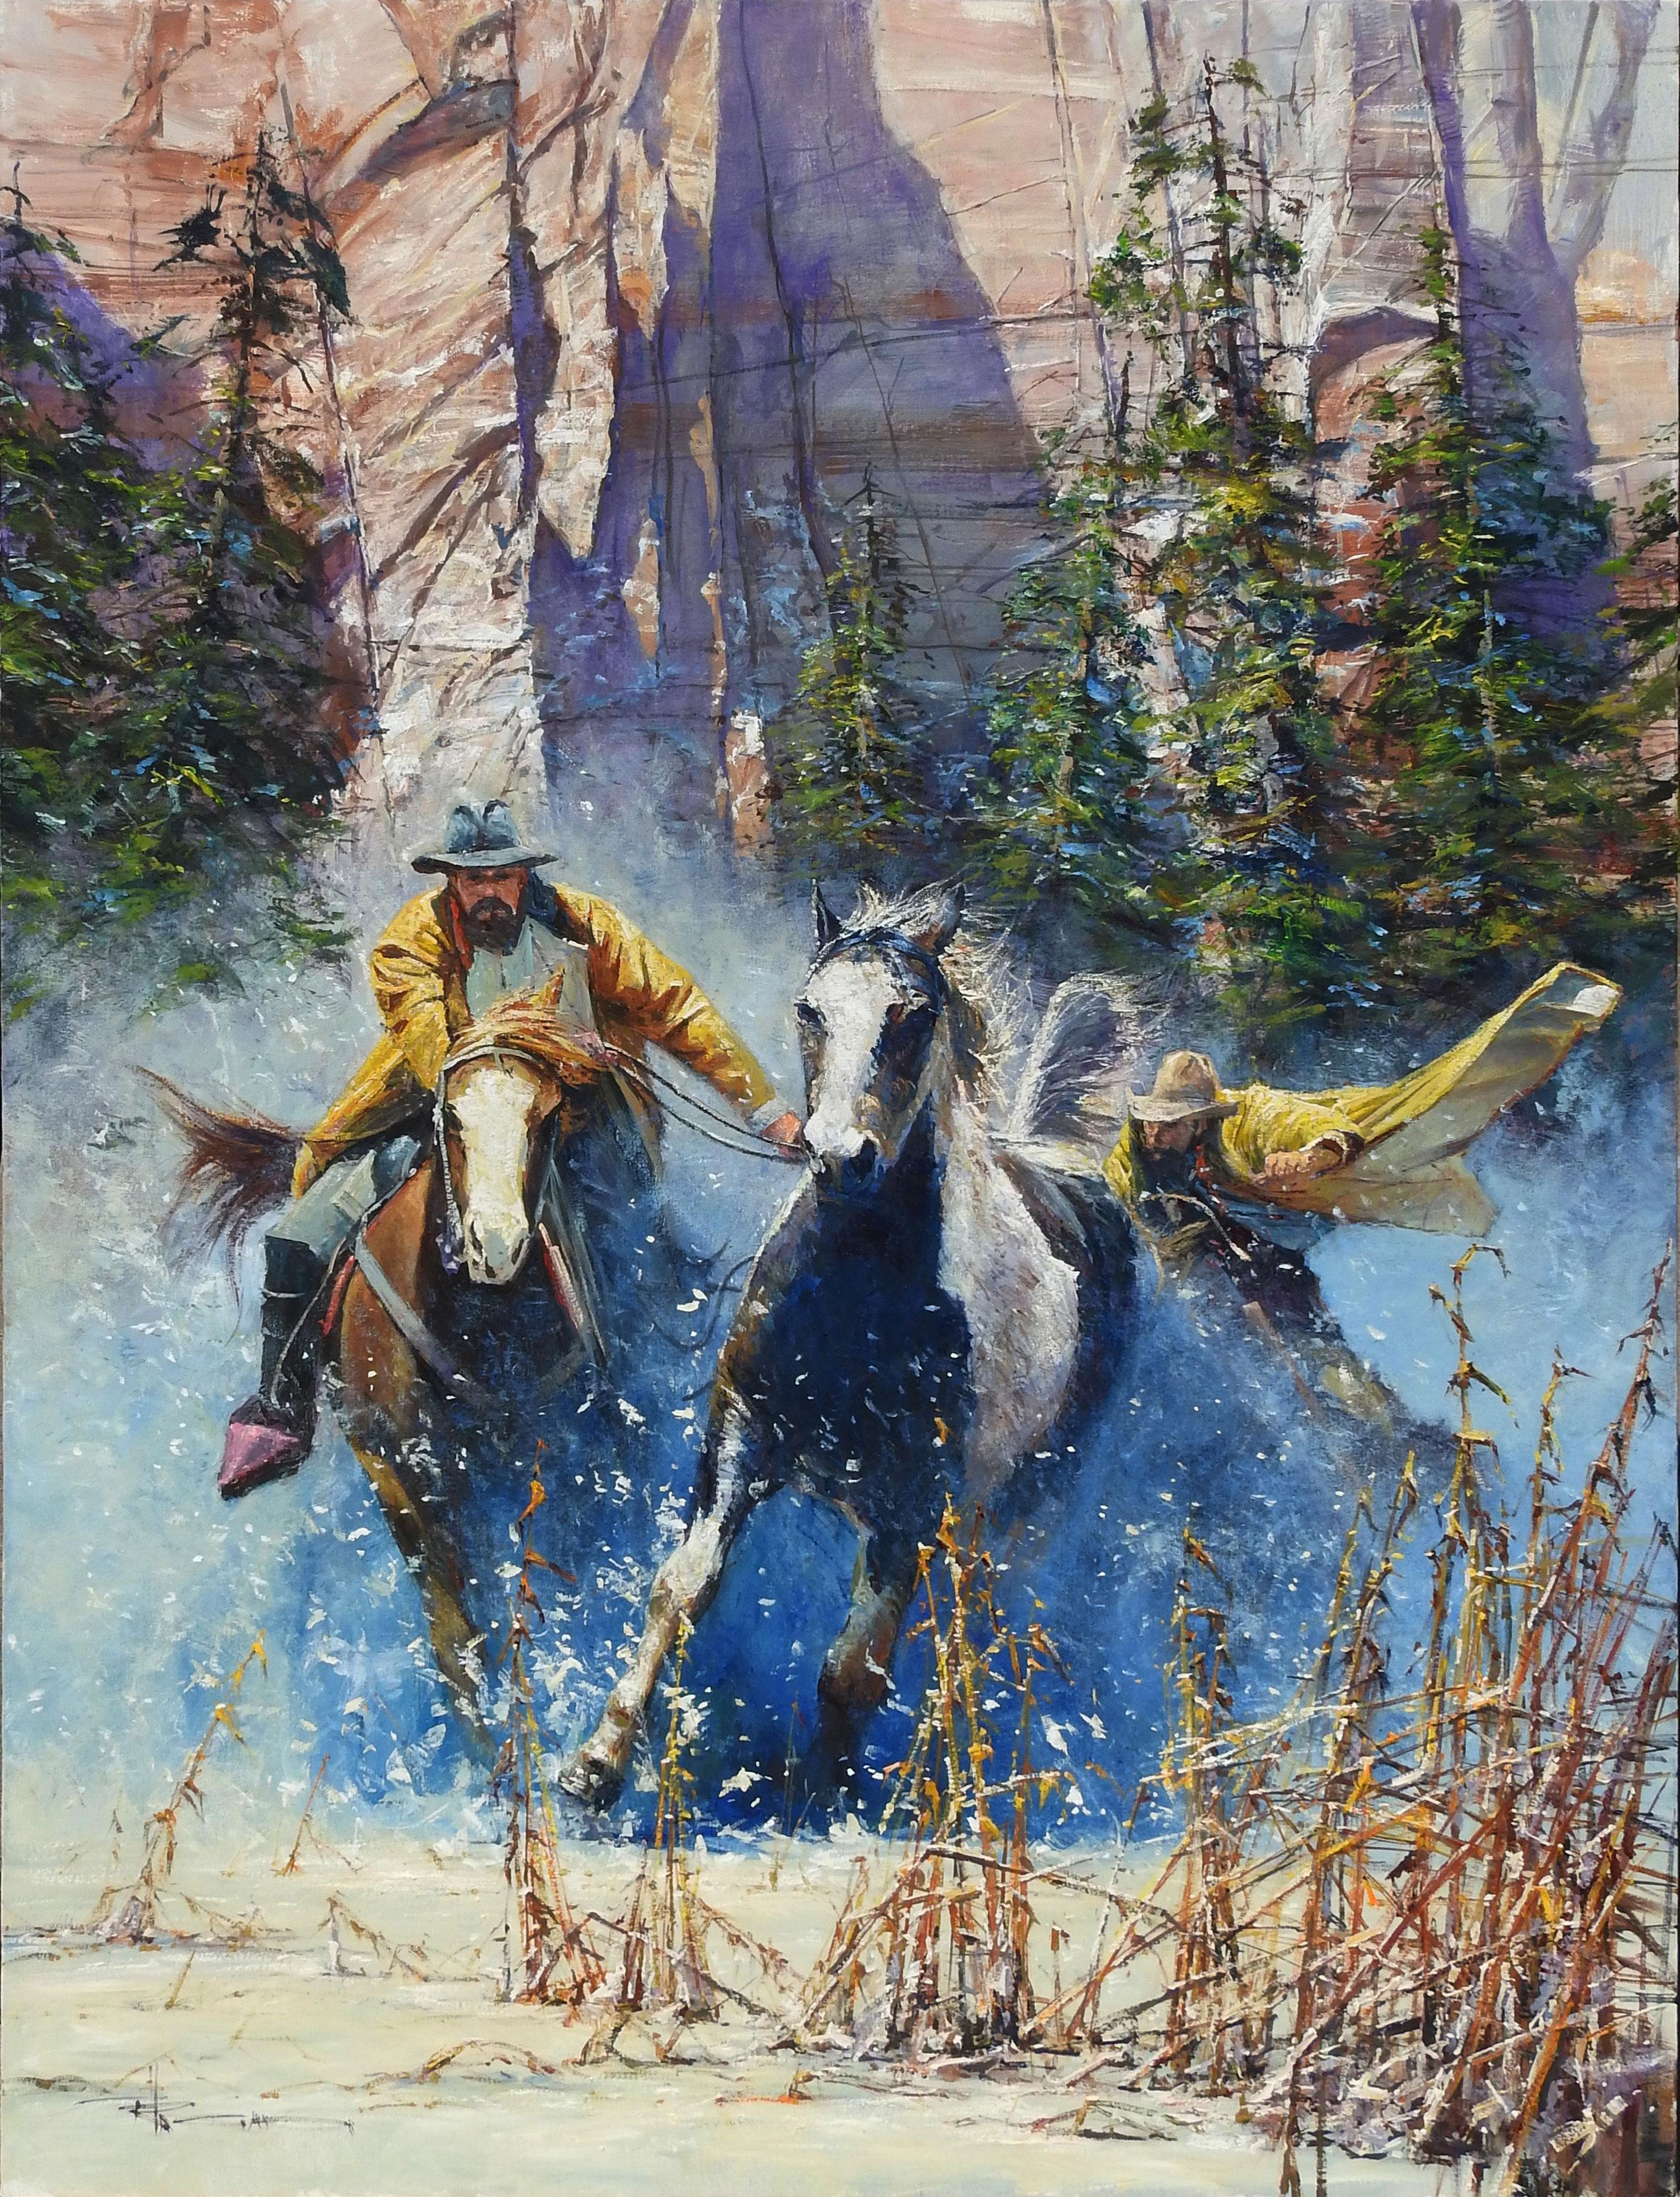 "The Runaway", Robert Hagan, 68x48, Oil/Canvas, Western, Impressionism, Cowboy